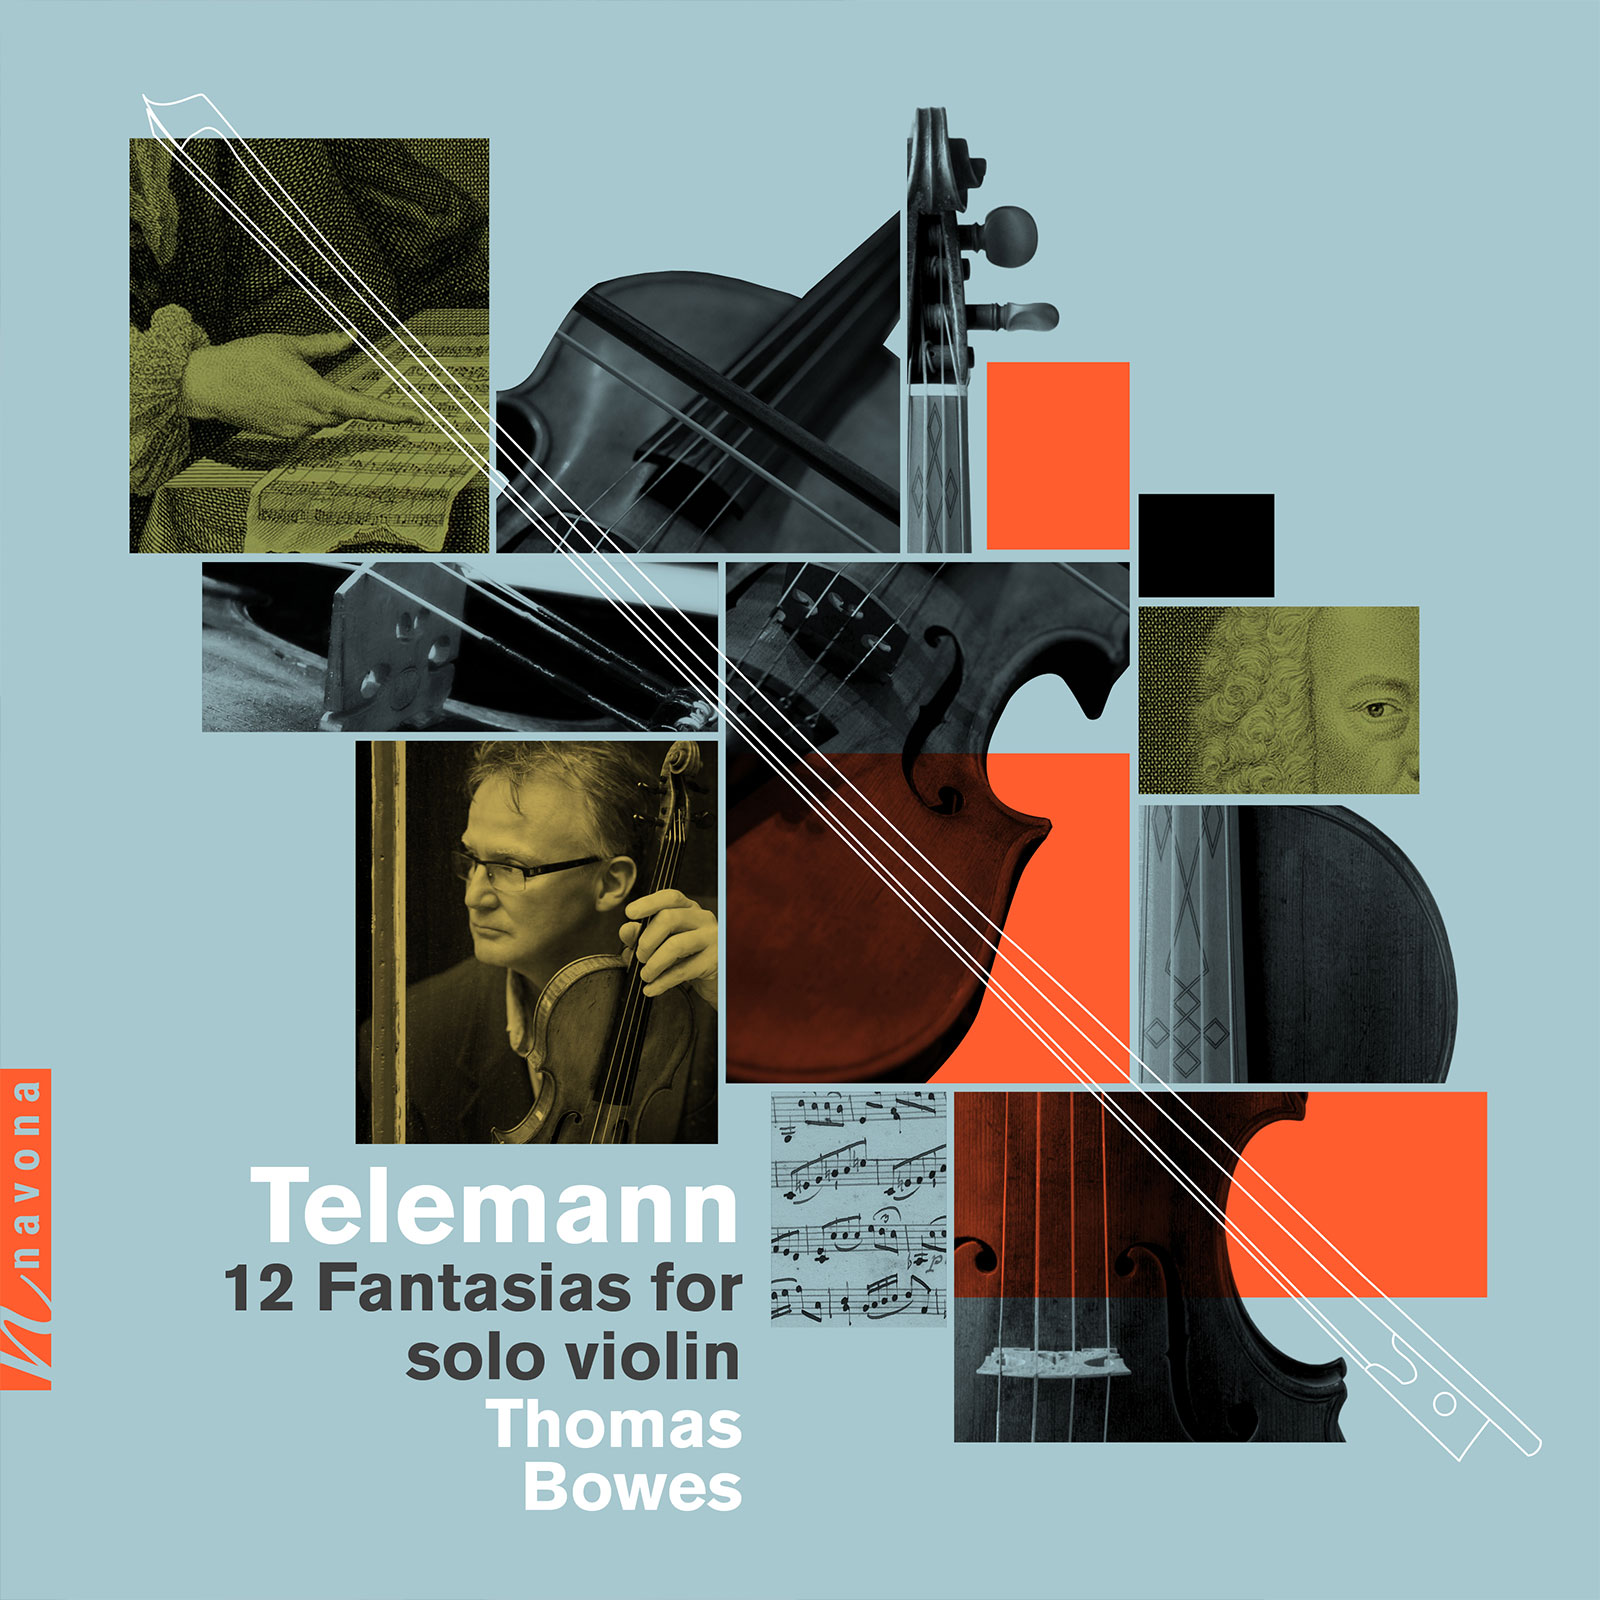 Telemann Fantasias